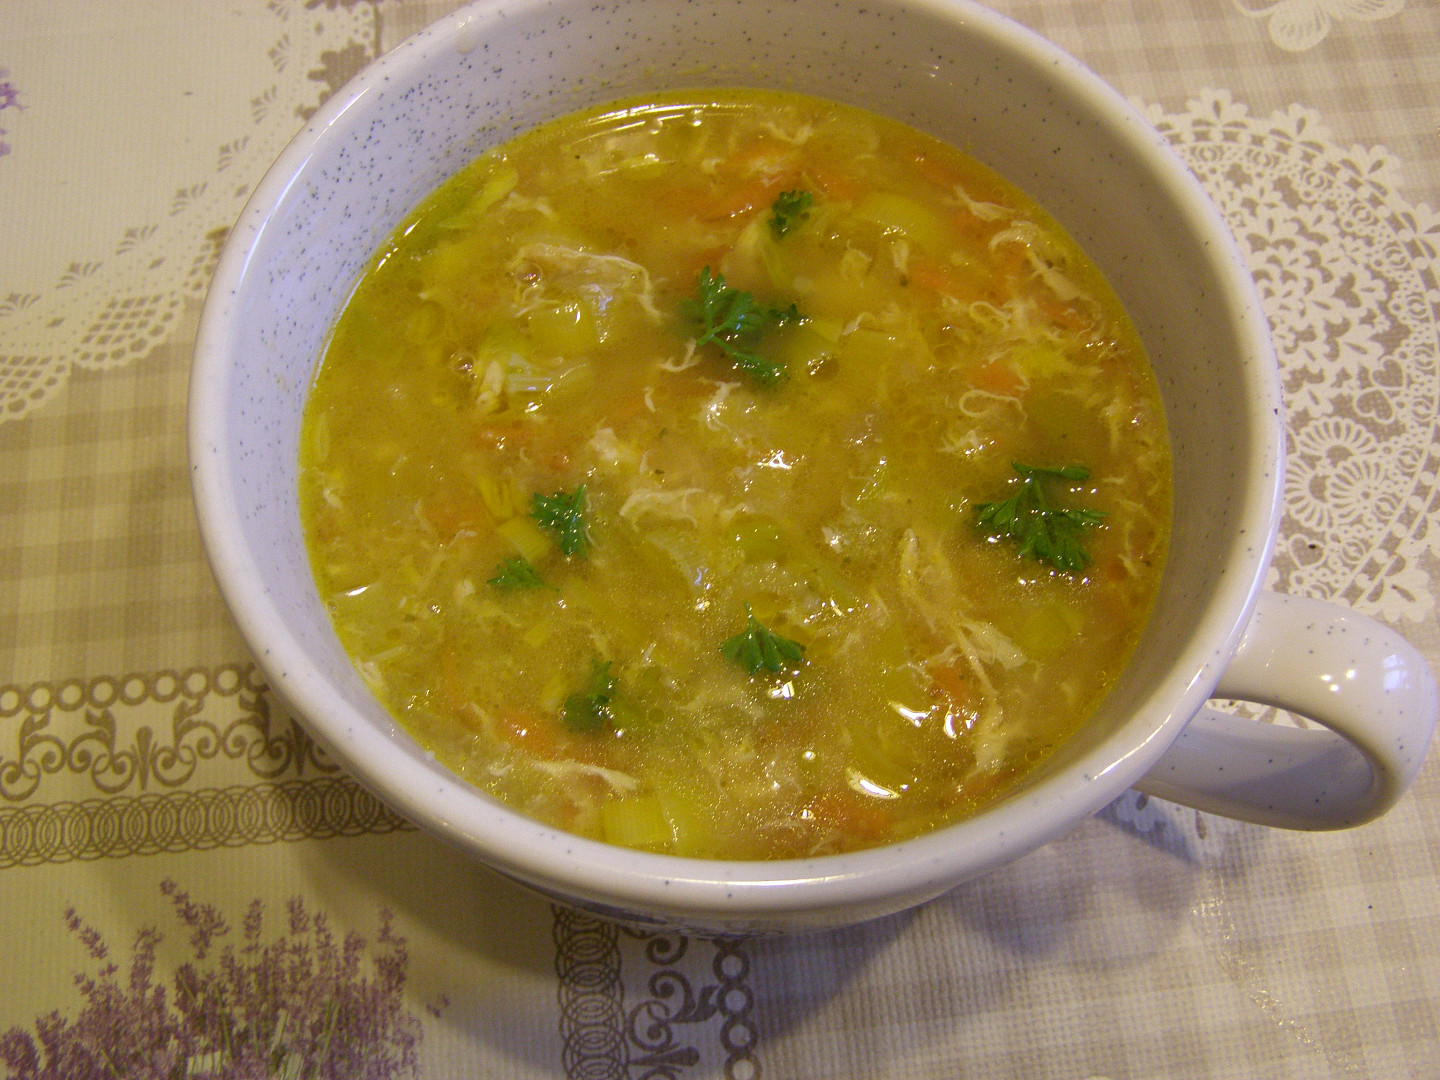 Maminkovská pórková polévka